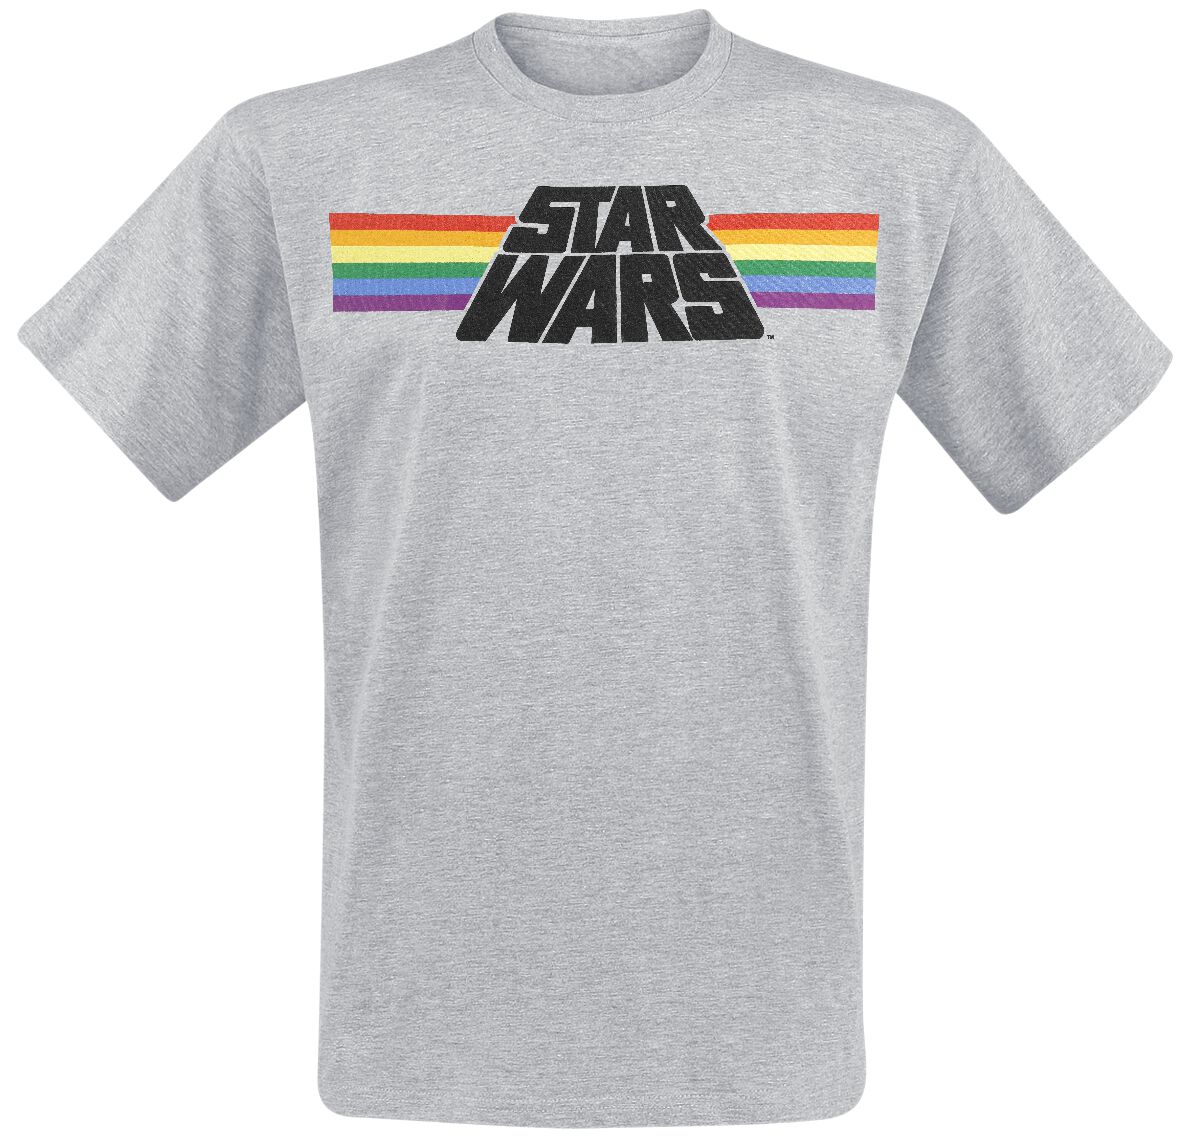 Star Wars Classic Rainbow T-Shirt grau meliert in L